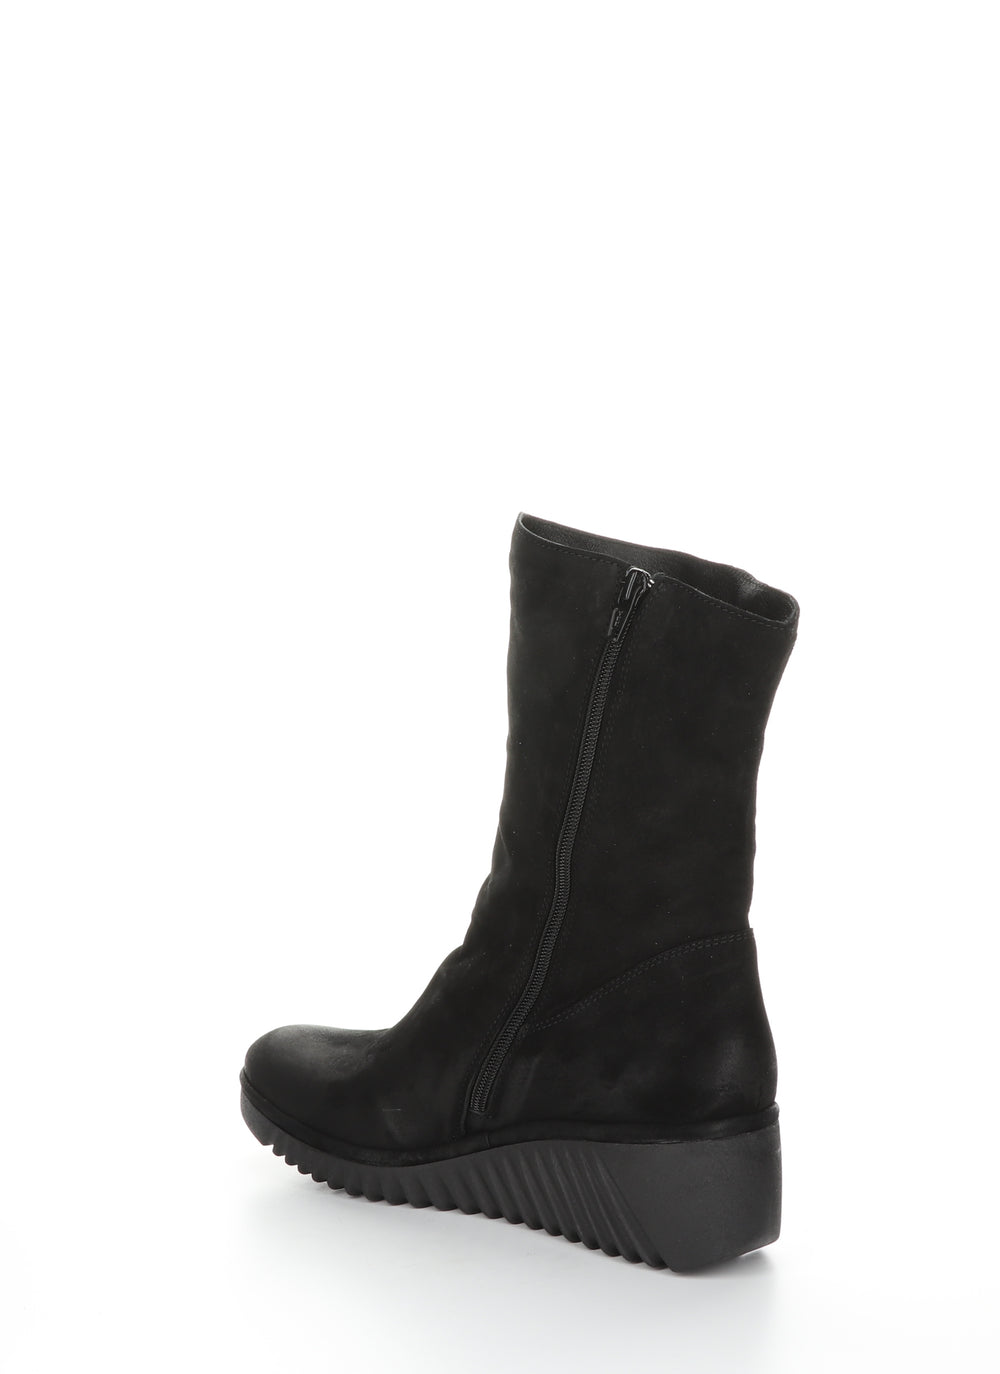 LEDE228FLY Black Zip Up Boots